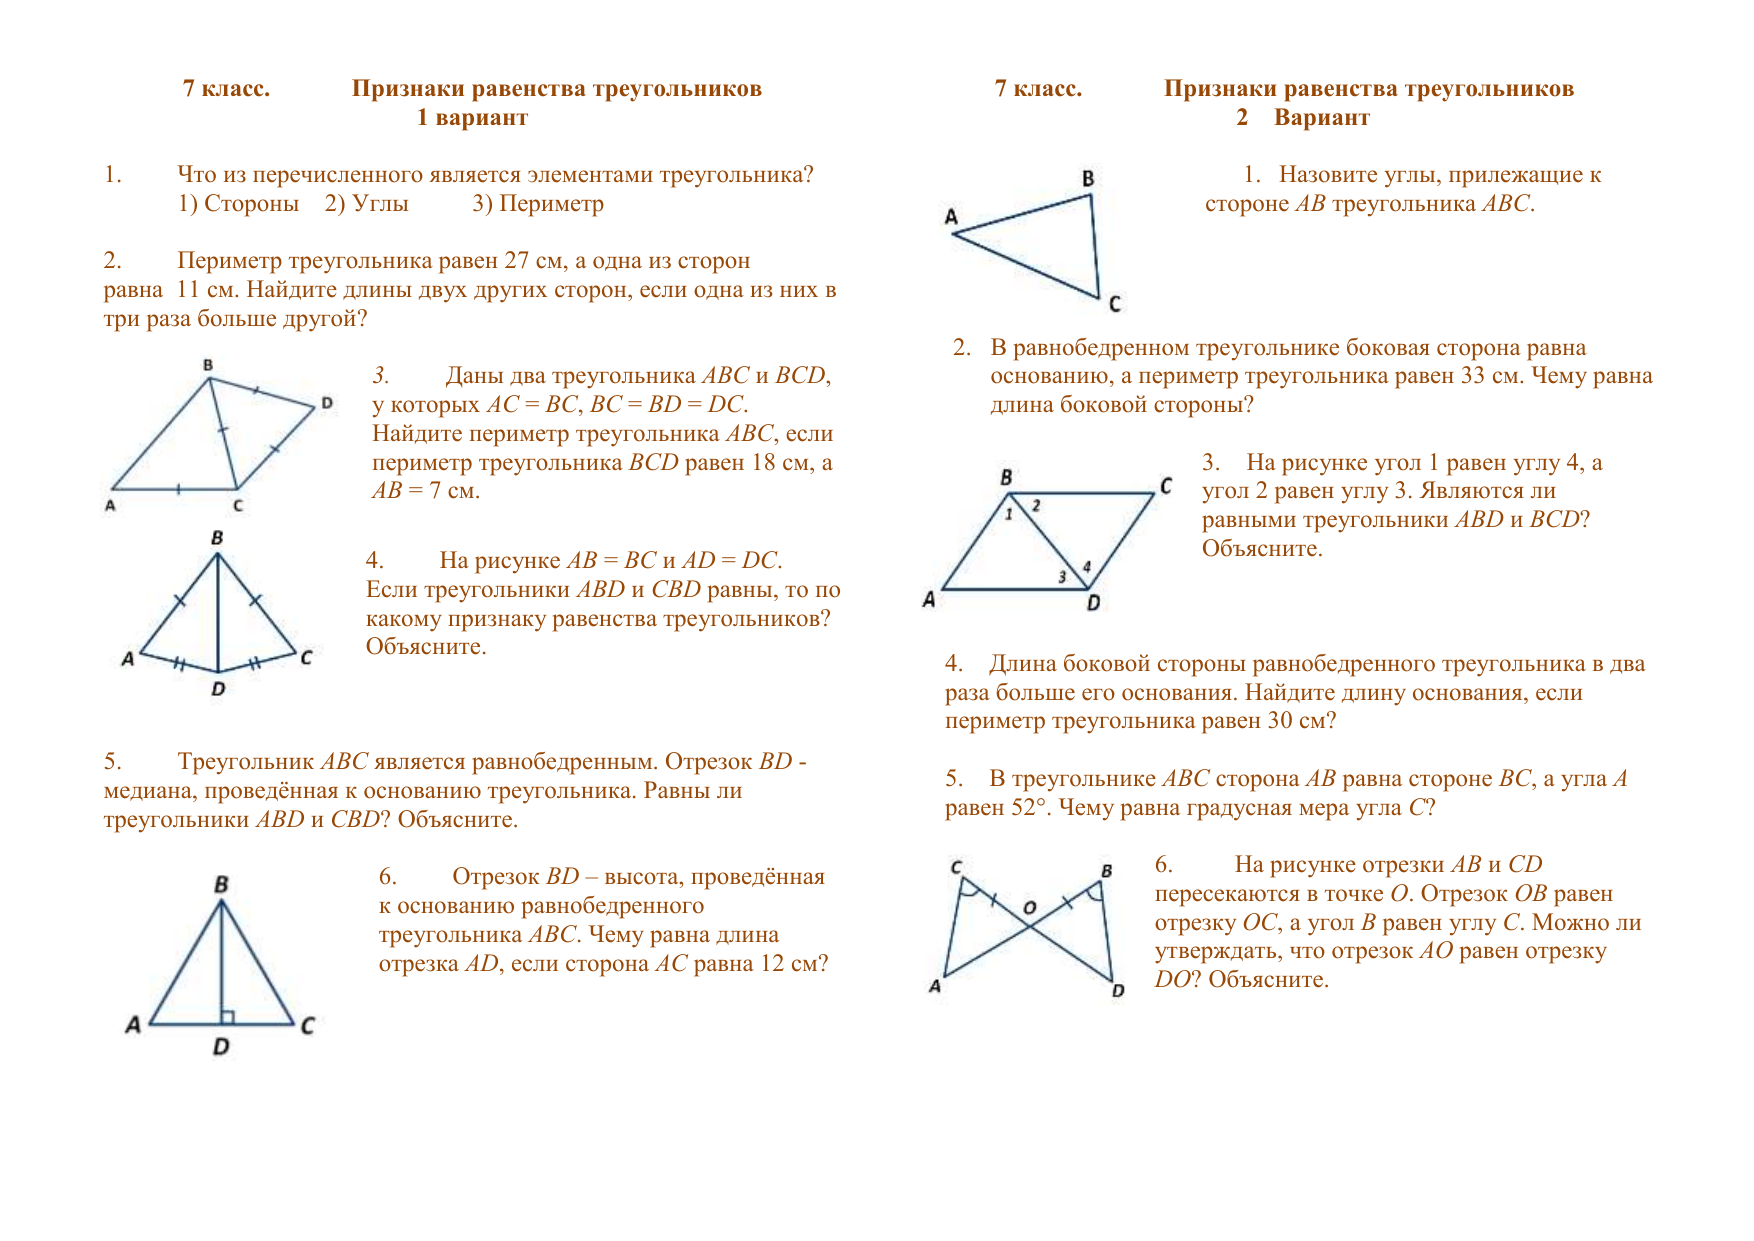 Тест треугольники признаки равенства треугольников ответы. Задачи на 1.2.3 признак равенства треугольников. Признаки равенства треугольников самостоятельная работа. Признаки равенства треугольников 7 класс самостоятельная работа. Равенства треугольников 7 класс геометрия.